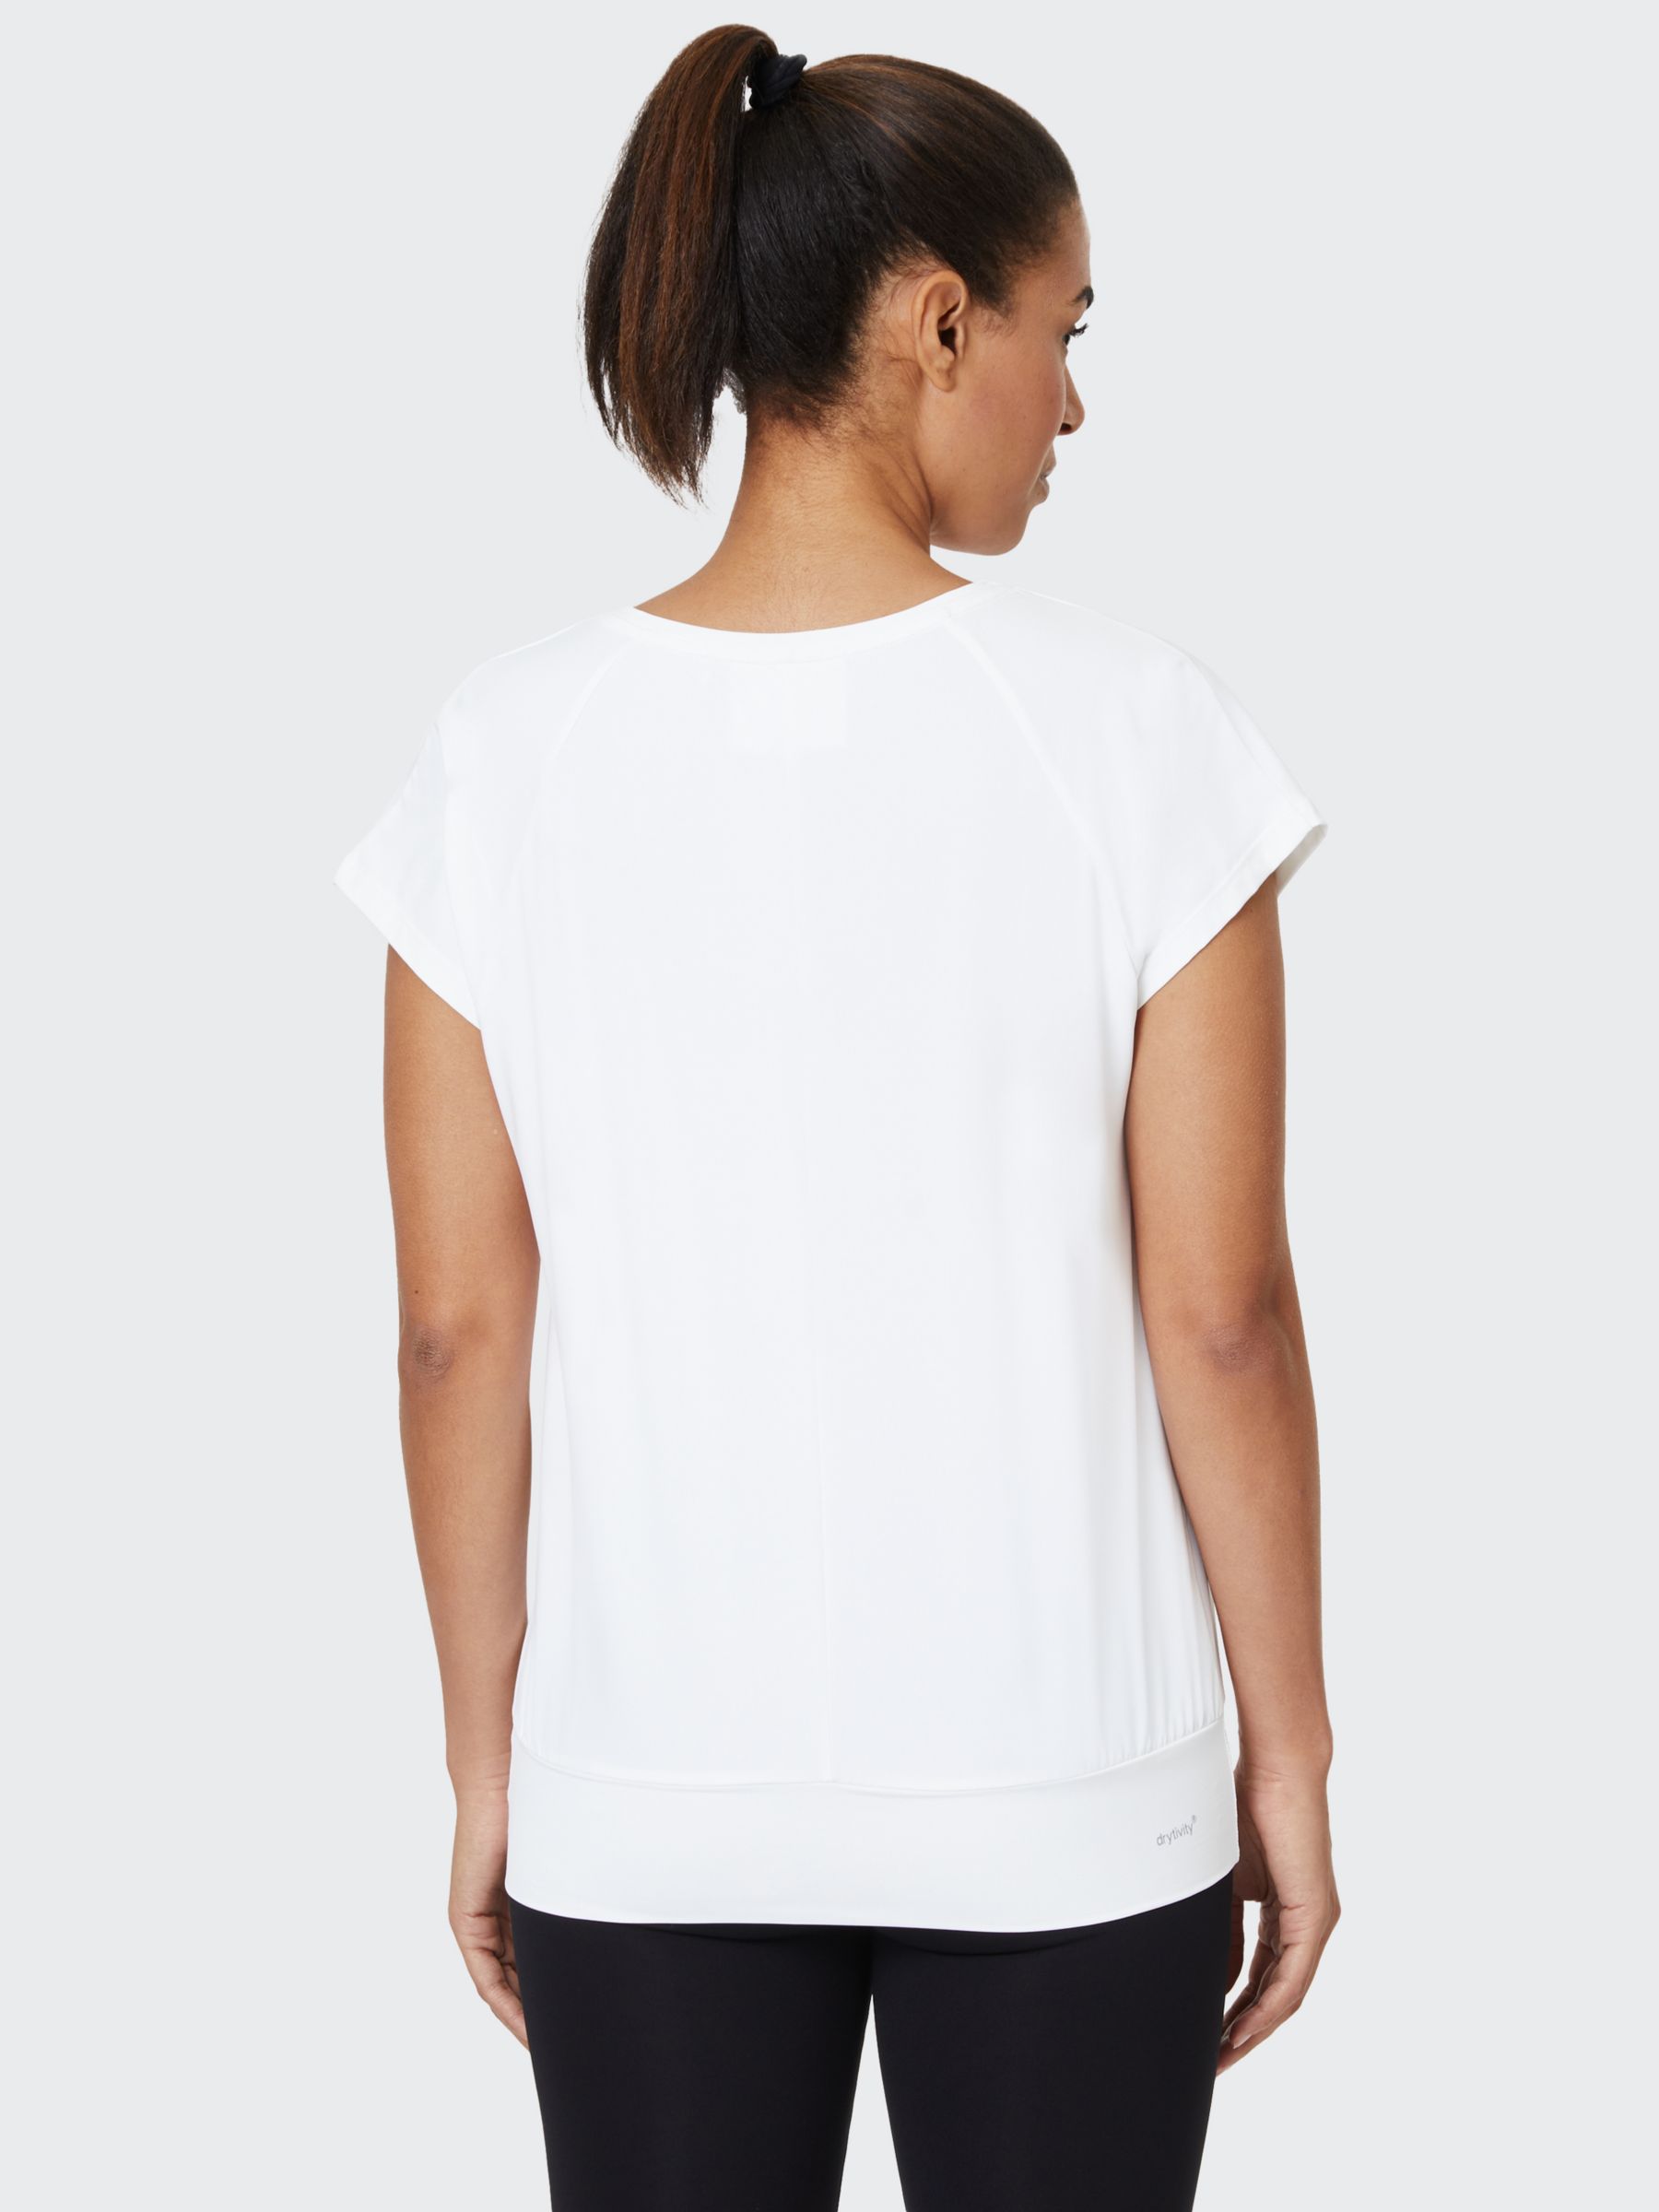 Venice Beach Nobel T-Shirt, White, XS